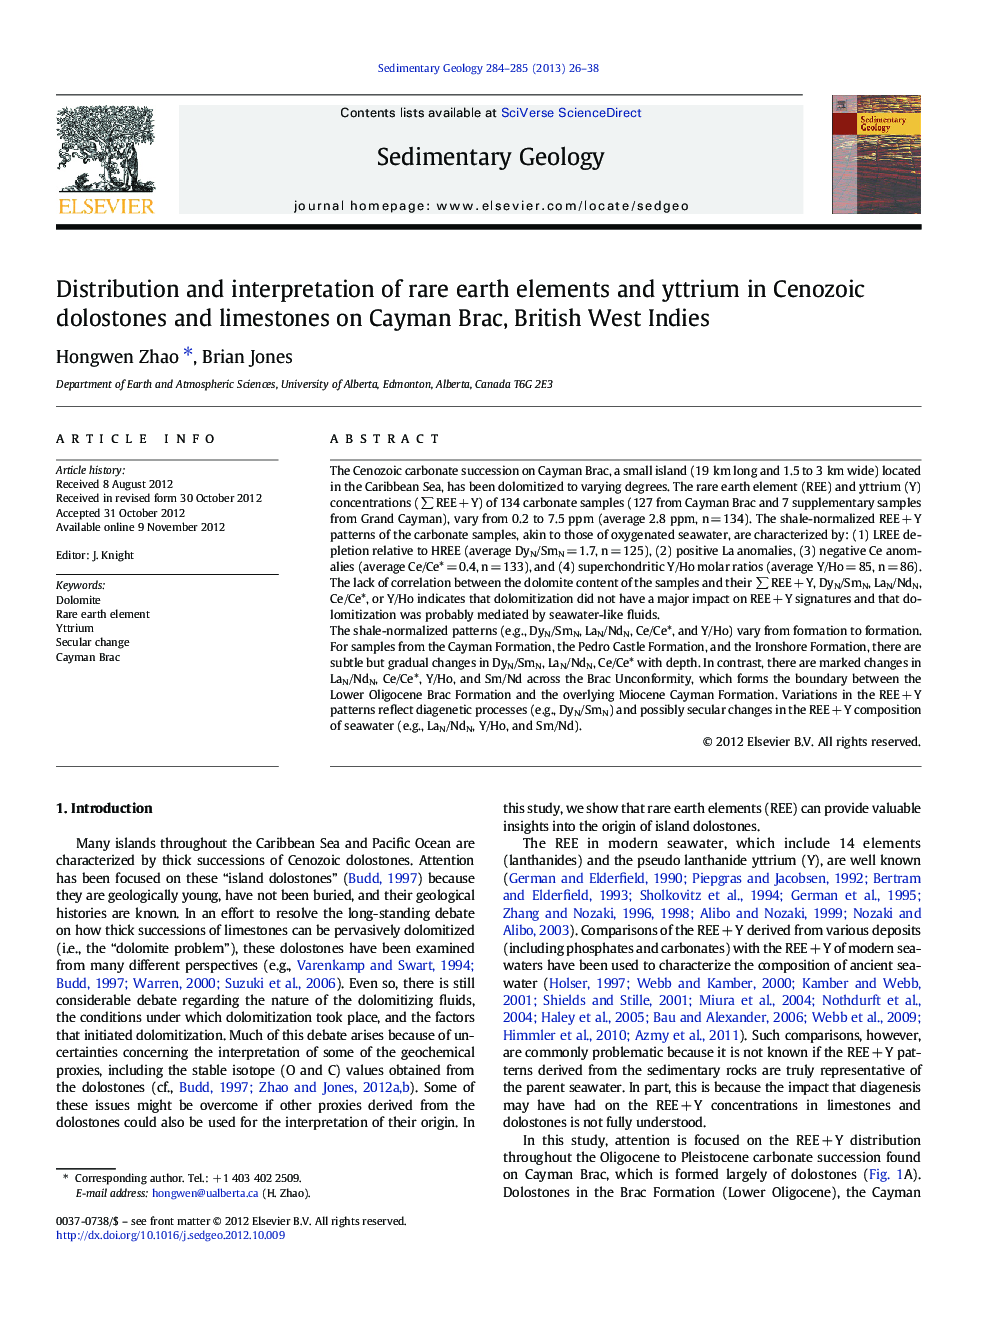 توزیع و تفسیر عناصر کمیاب خاکی و یتیم در دولومیت های سنوزوئیک و سنگ آهک در کیمن برک، هندوستان بریتانیا 